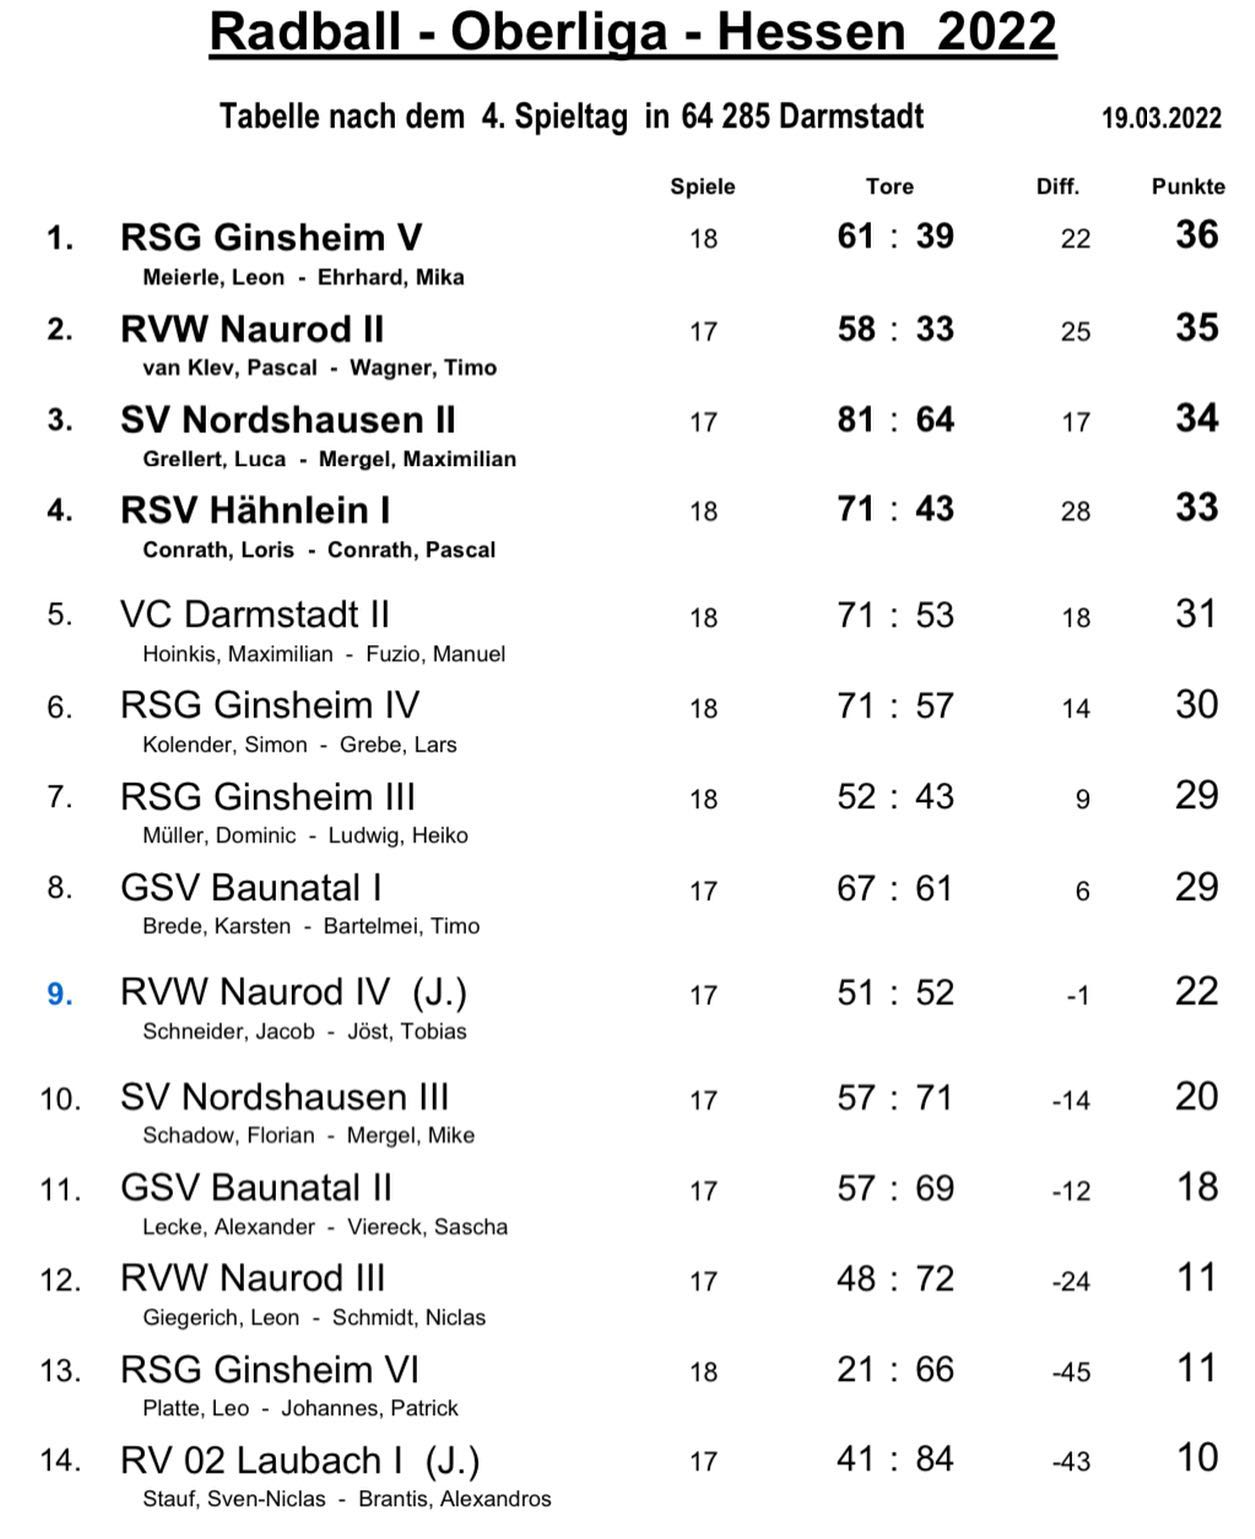 📊 Oberliga 4. Spieltag Ergebnisse

Die Ergebnisse vom 4. Spieltag:

GSV 1 (Bartelmei/Brede)
✅ Naurod 4 2️⃣:1️⃣
✅ Naurod 3 7️⃣:5️⃣
❌ Naurod 2 0️⃣:5️⃣
✅ Laubach 1 8️⃣:3️⃣

GSV 2 (Lecke/Viereck)
❕Laubach 1 2️⃣:2️⃣
❌ Naurod 2 1️⃣:7️⃣
❌ Naurod 4 3️⃣:6️⃣
✅ Naurod 3 9️⃣:4️⃣